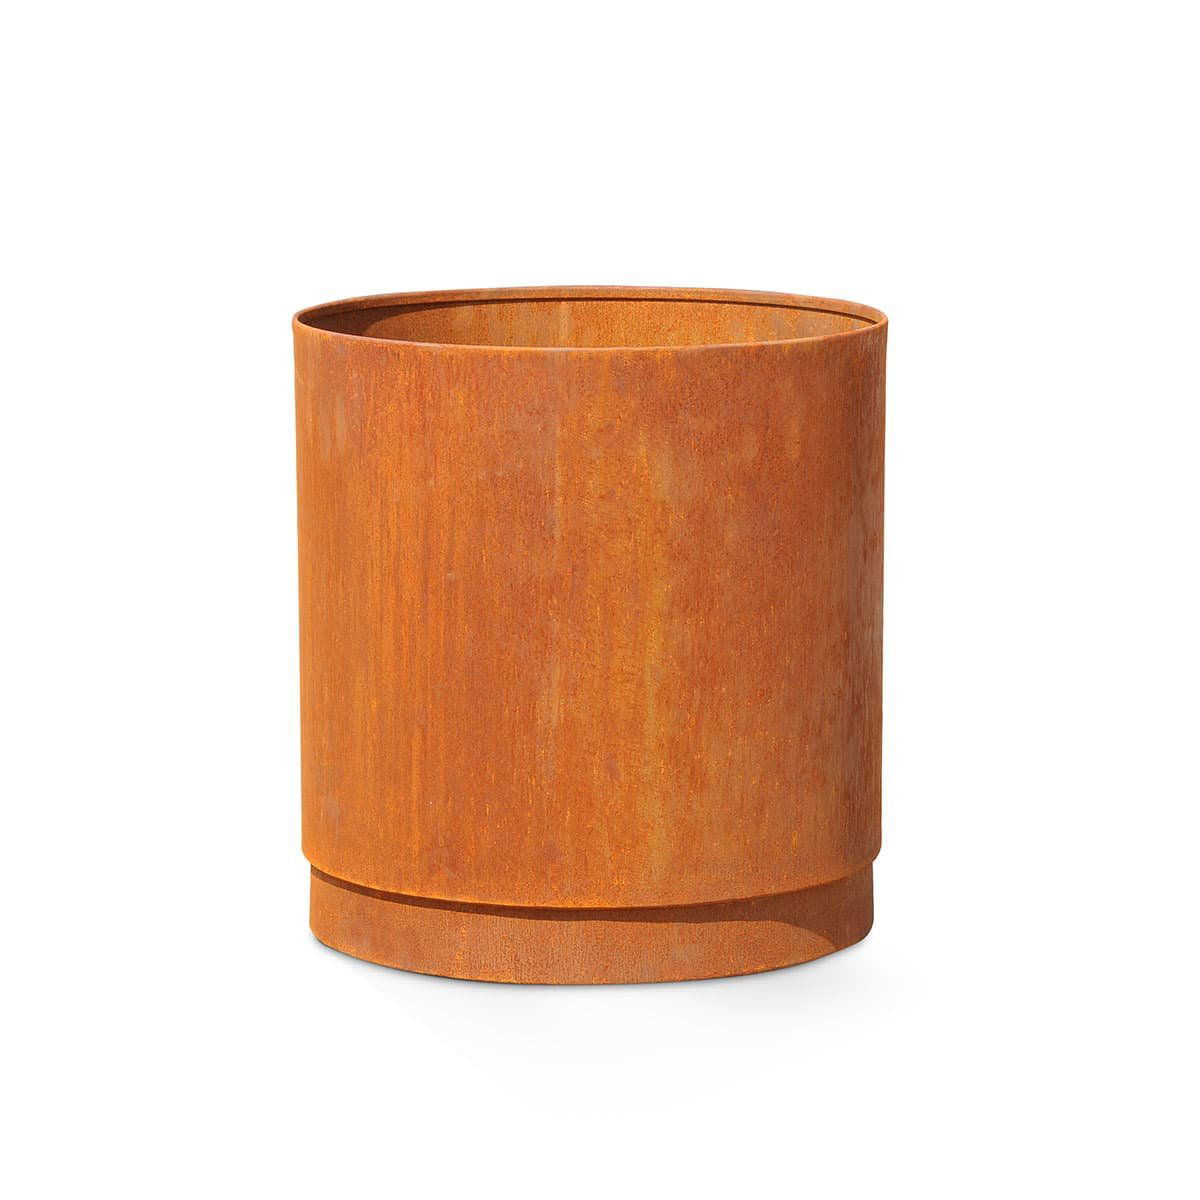 Rund plantekasse – cortenstål, m/bund, hjul og kapilær 96×80 cm